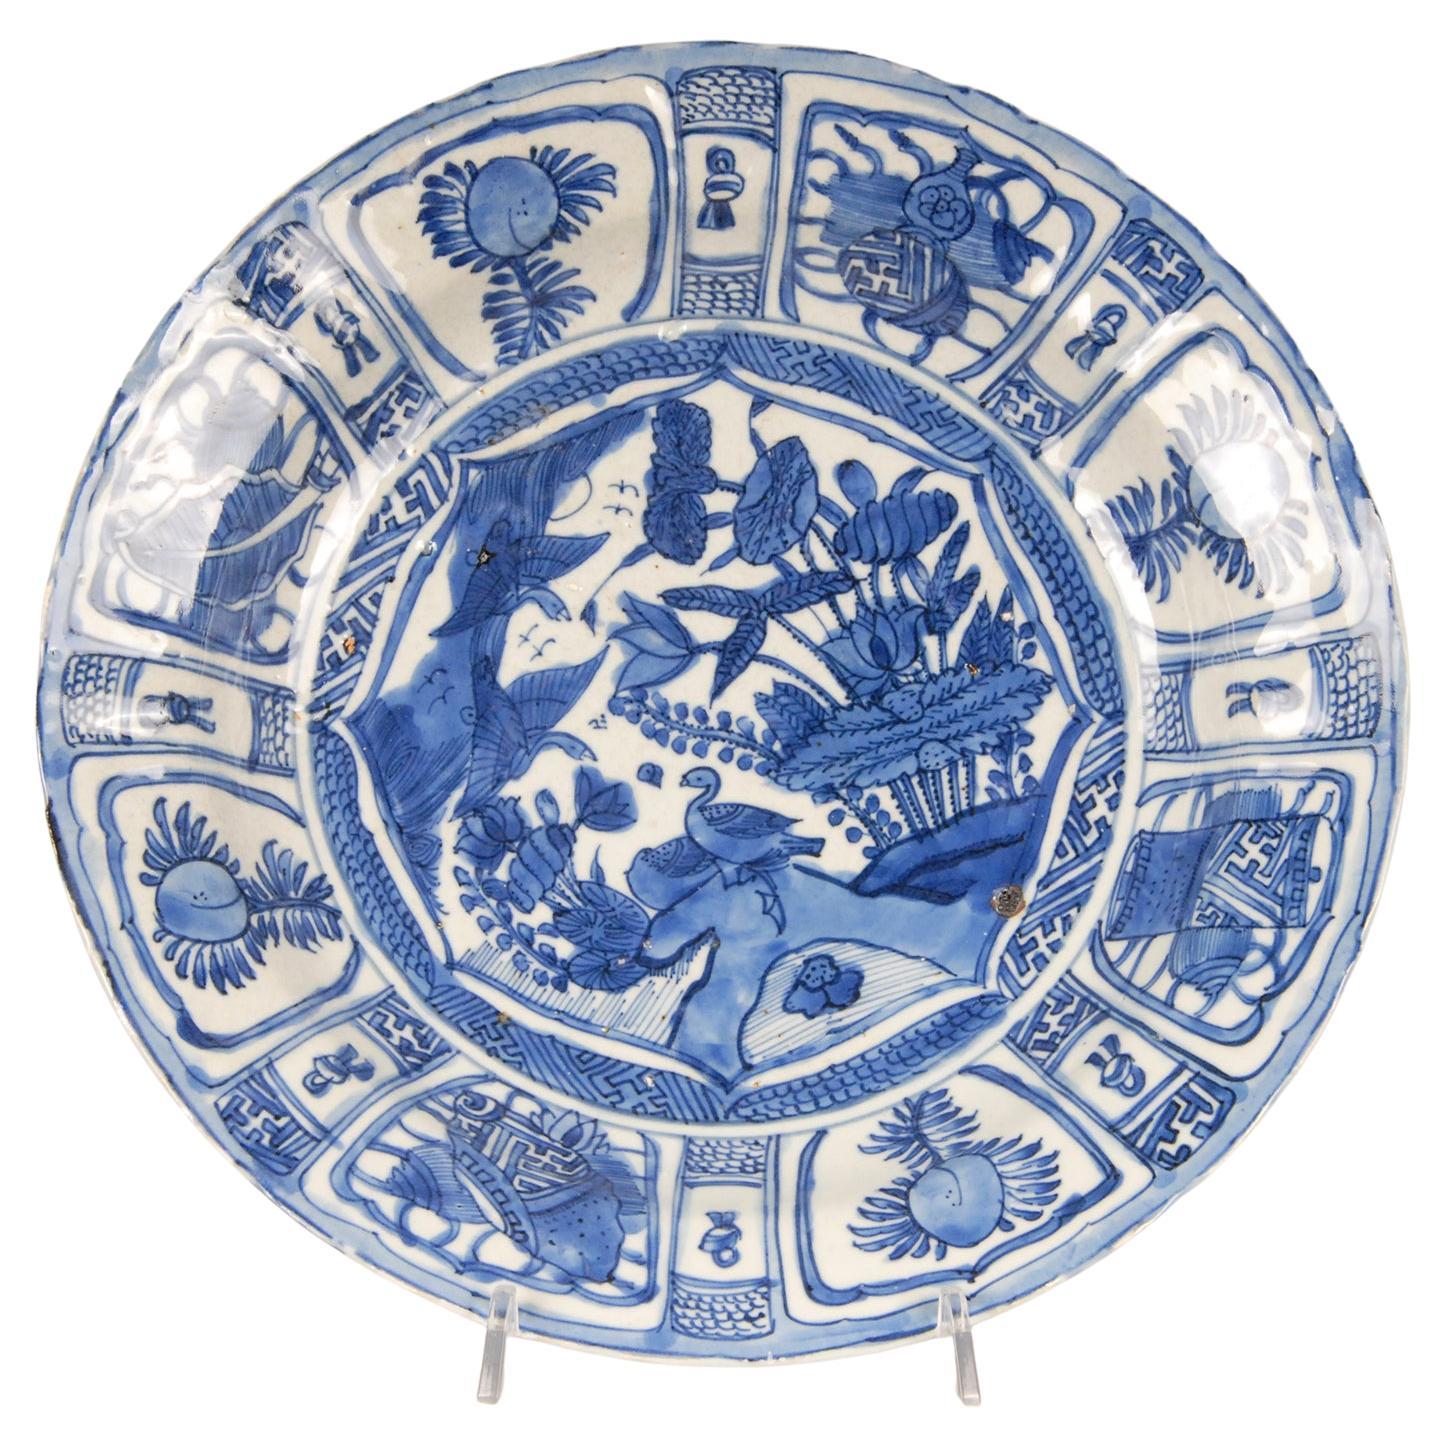 Chinesische Kraakschale aus Ming-Porzellan des frühen 17. Jahrhunderts, blau-weißer Teller